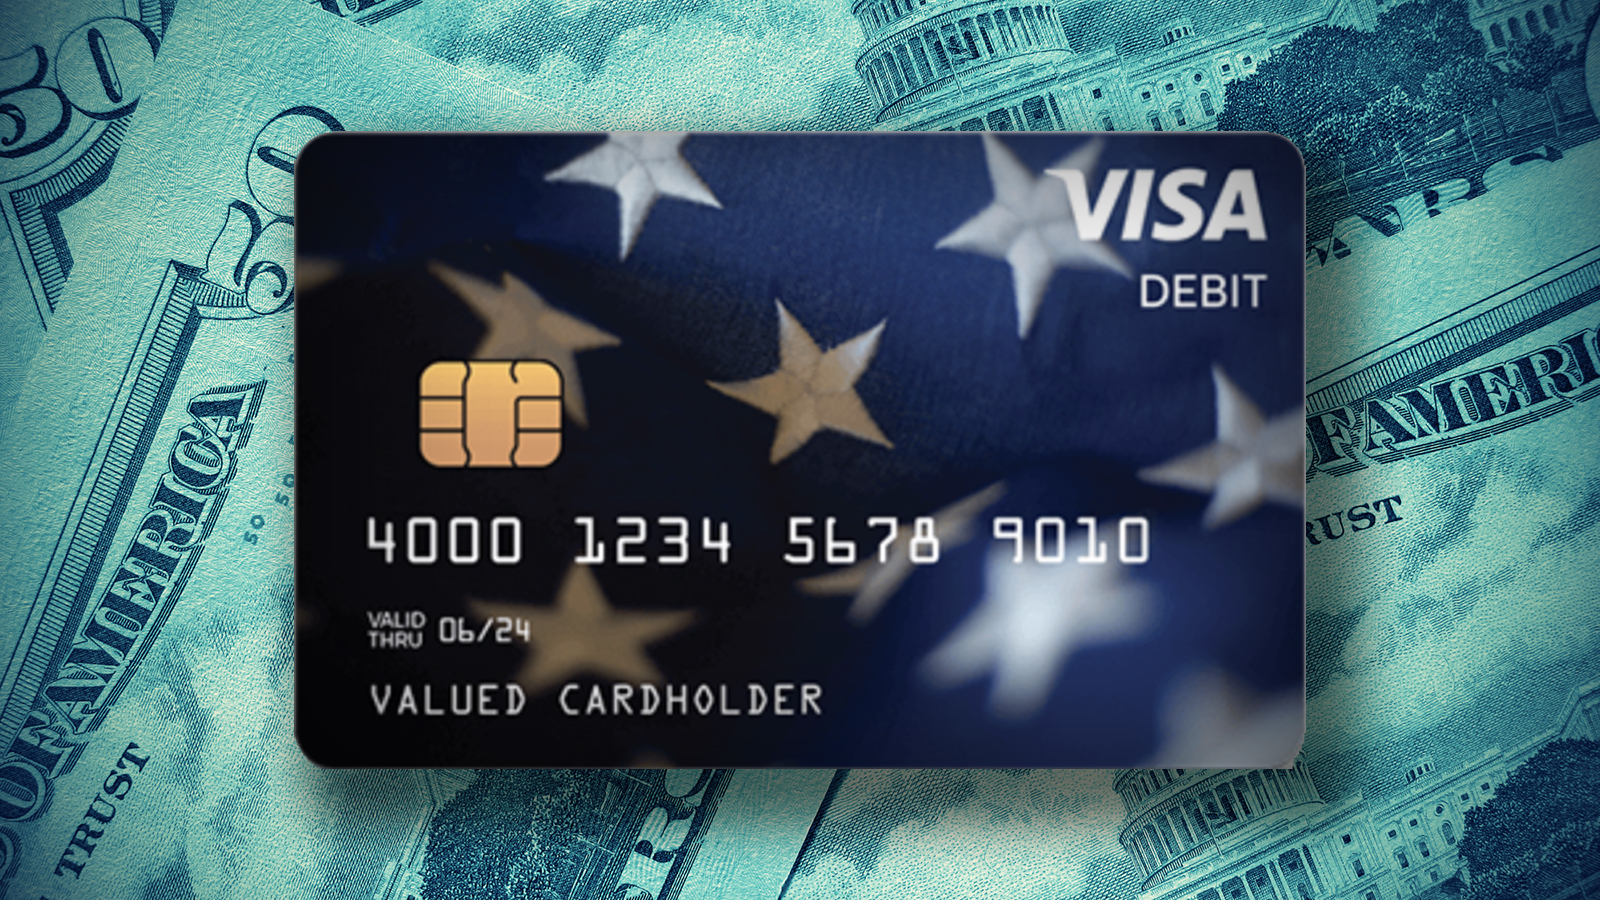 turbotax debit card cash advance limit